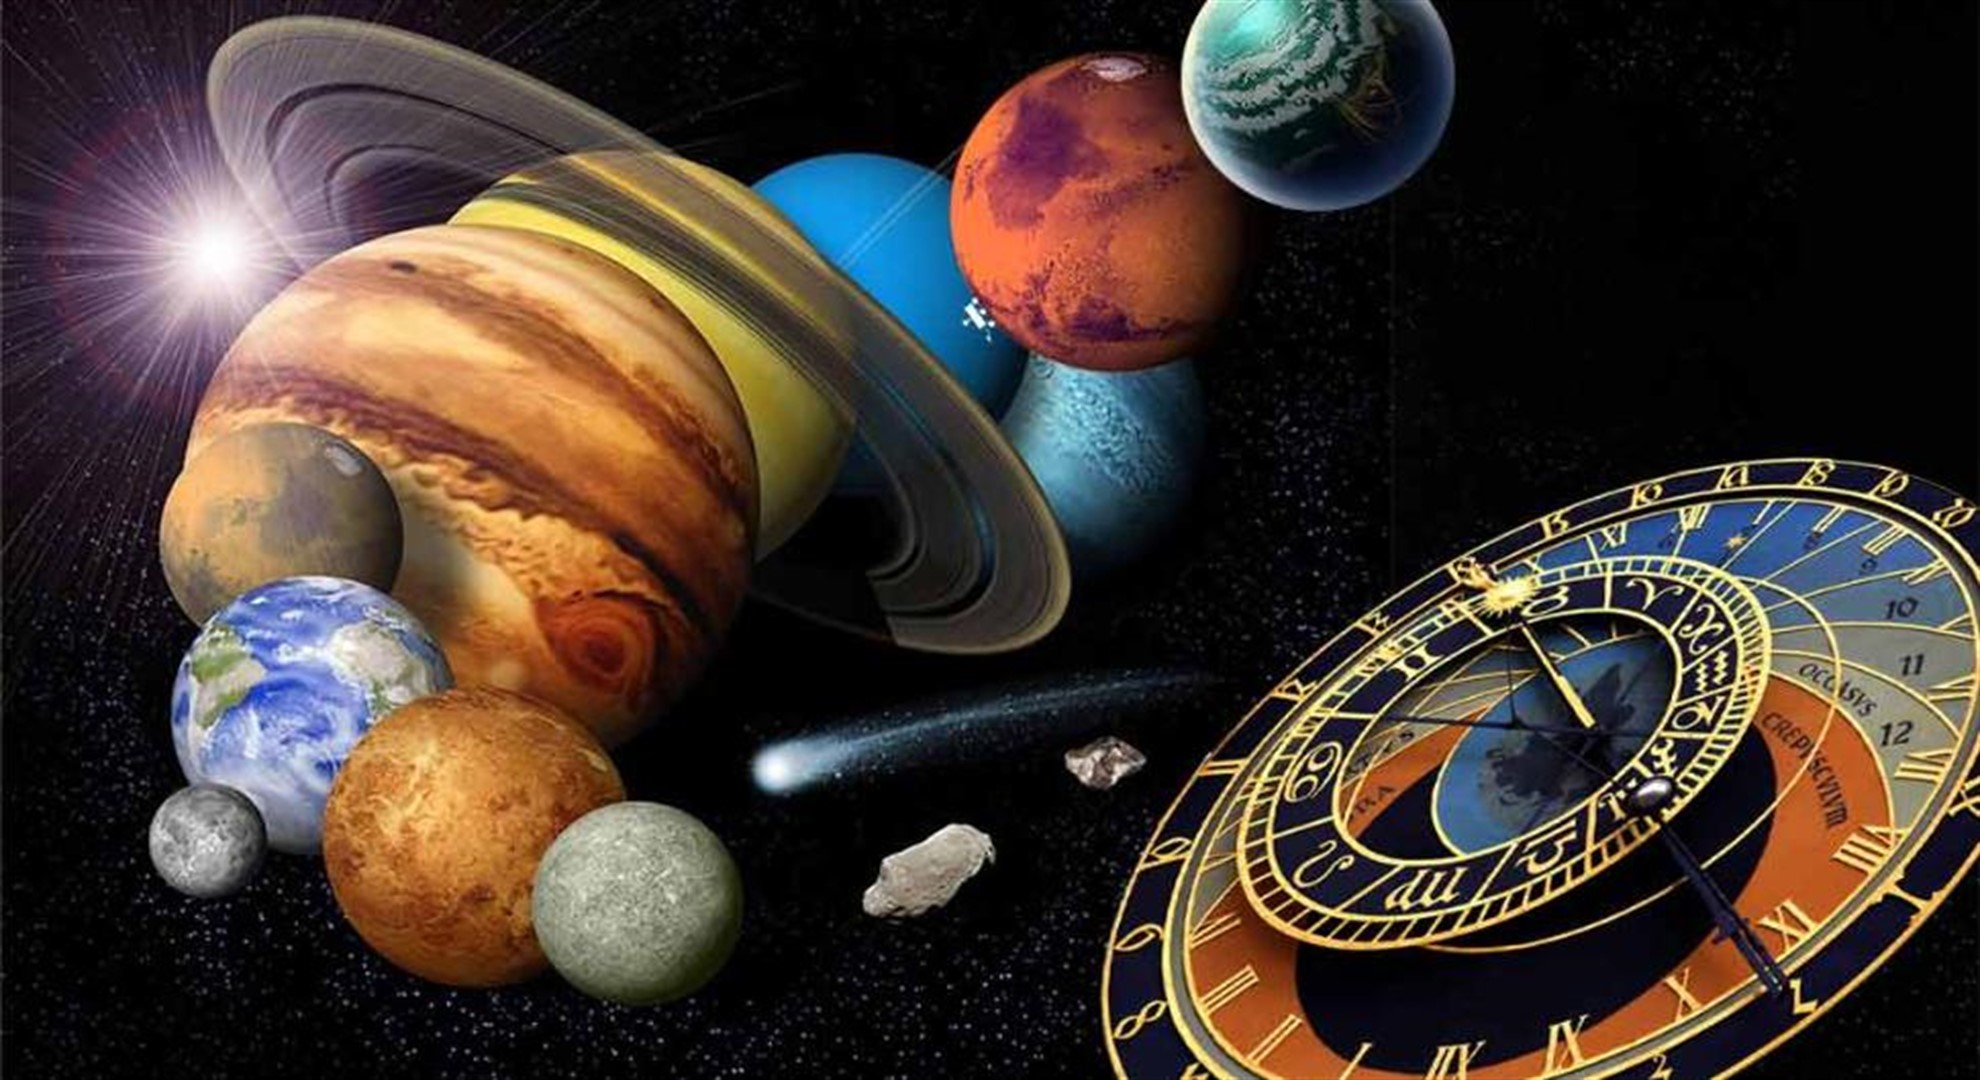 Pe 18 iunie, Mercur intră în retrograd. Cum vor fi influențate zodiile de această mișcare